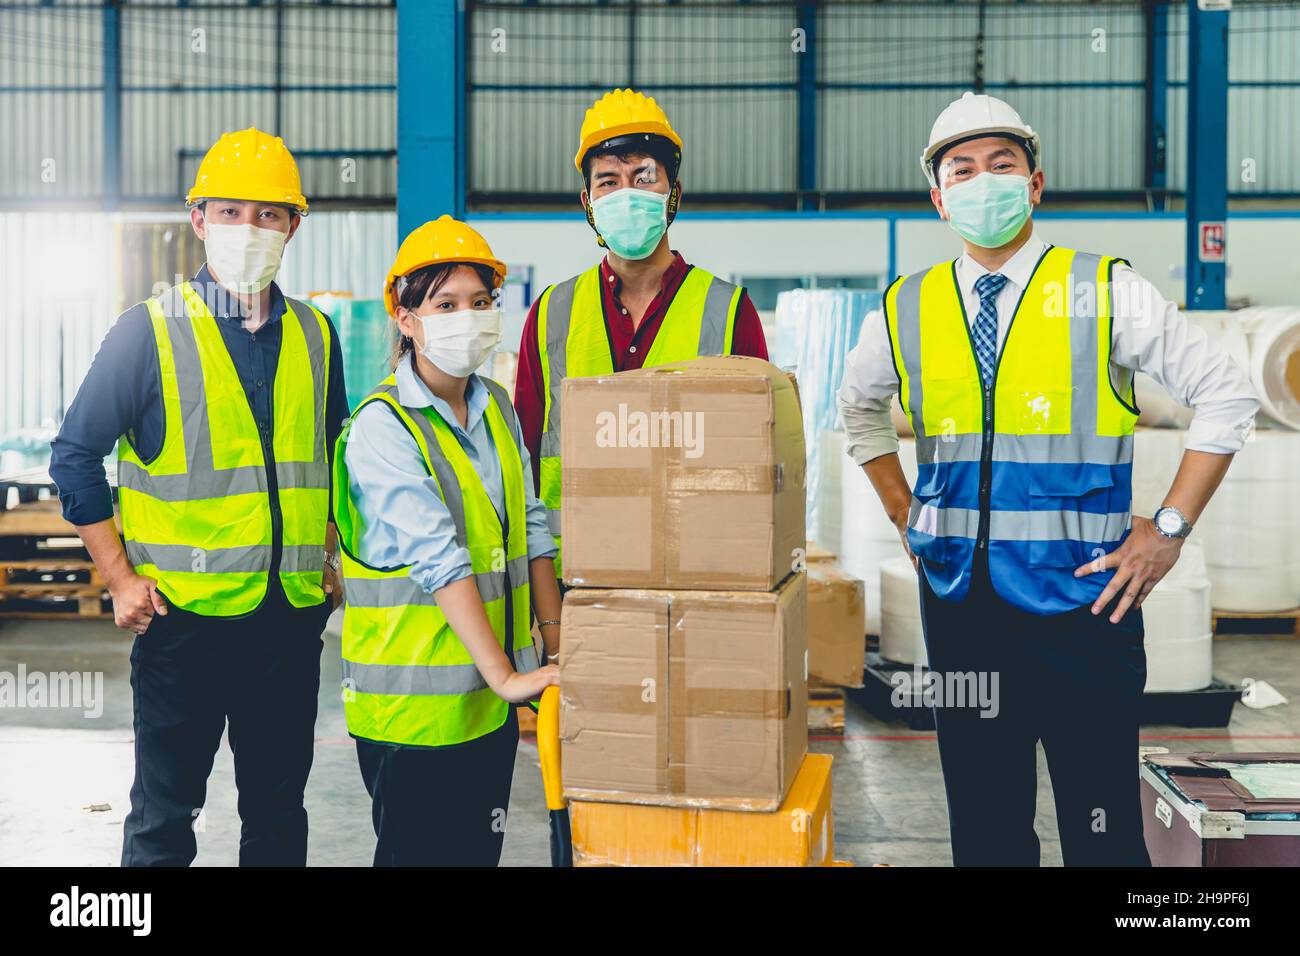 Eine Gruppe asiatischer Teamarbeiter trägt eine Gesichtsmaske, die im Lagerhaus zusammensteht Stockfoto